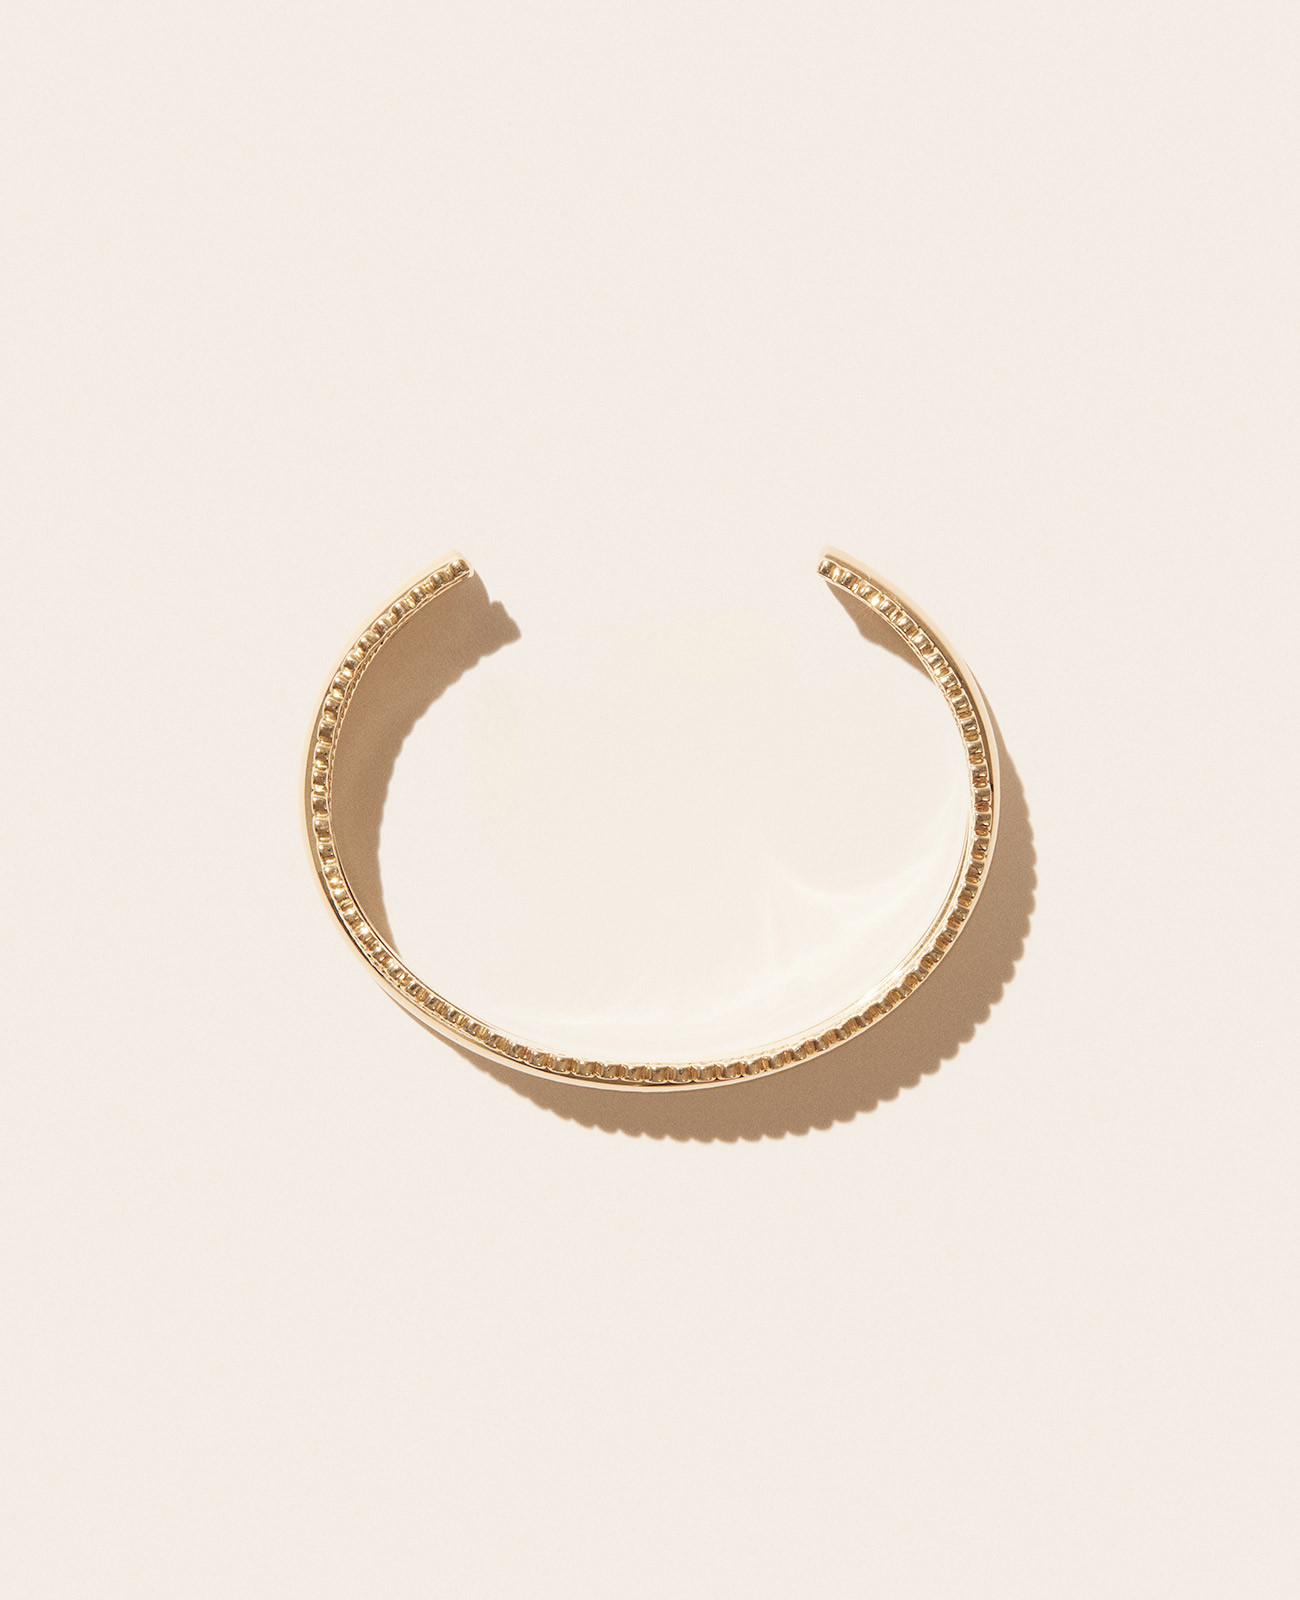 JIL N°3 bracelet pascale monvoisin jewelry paris